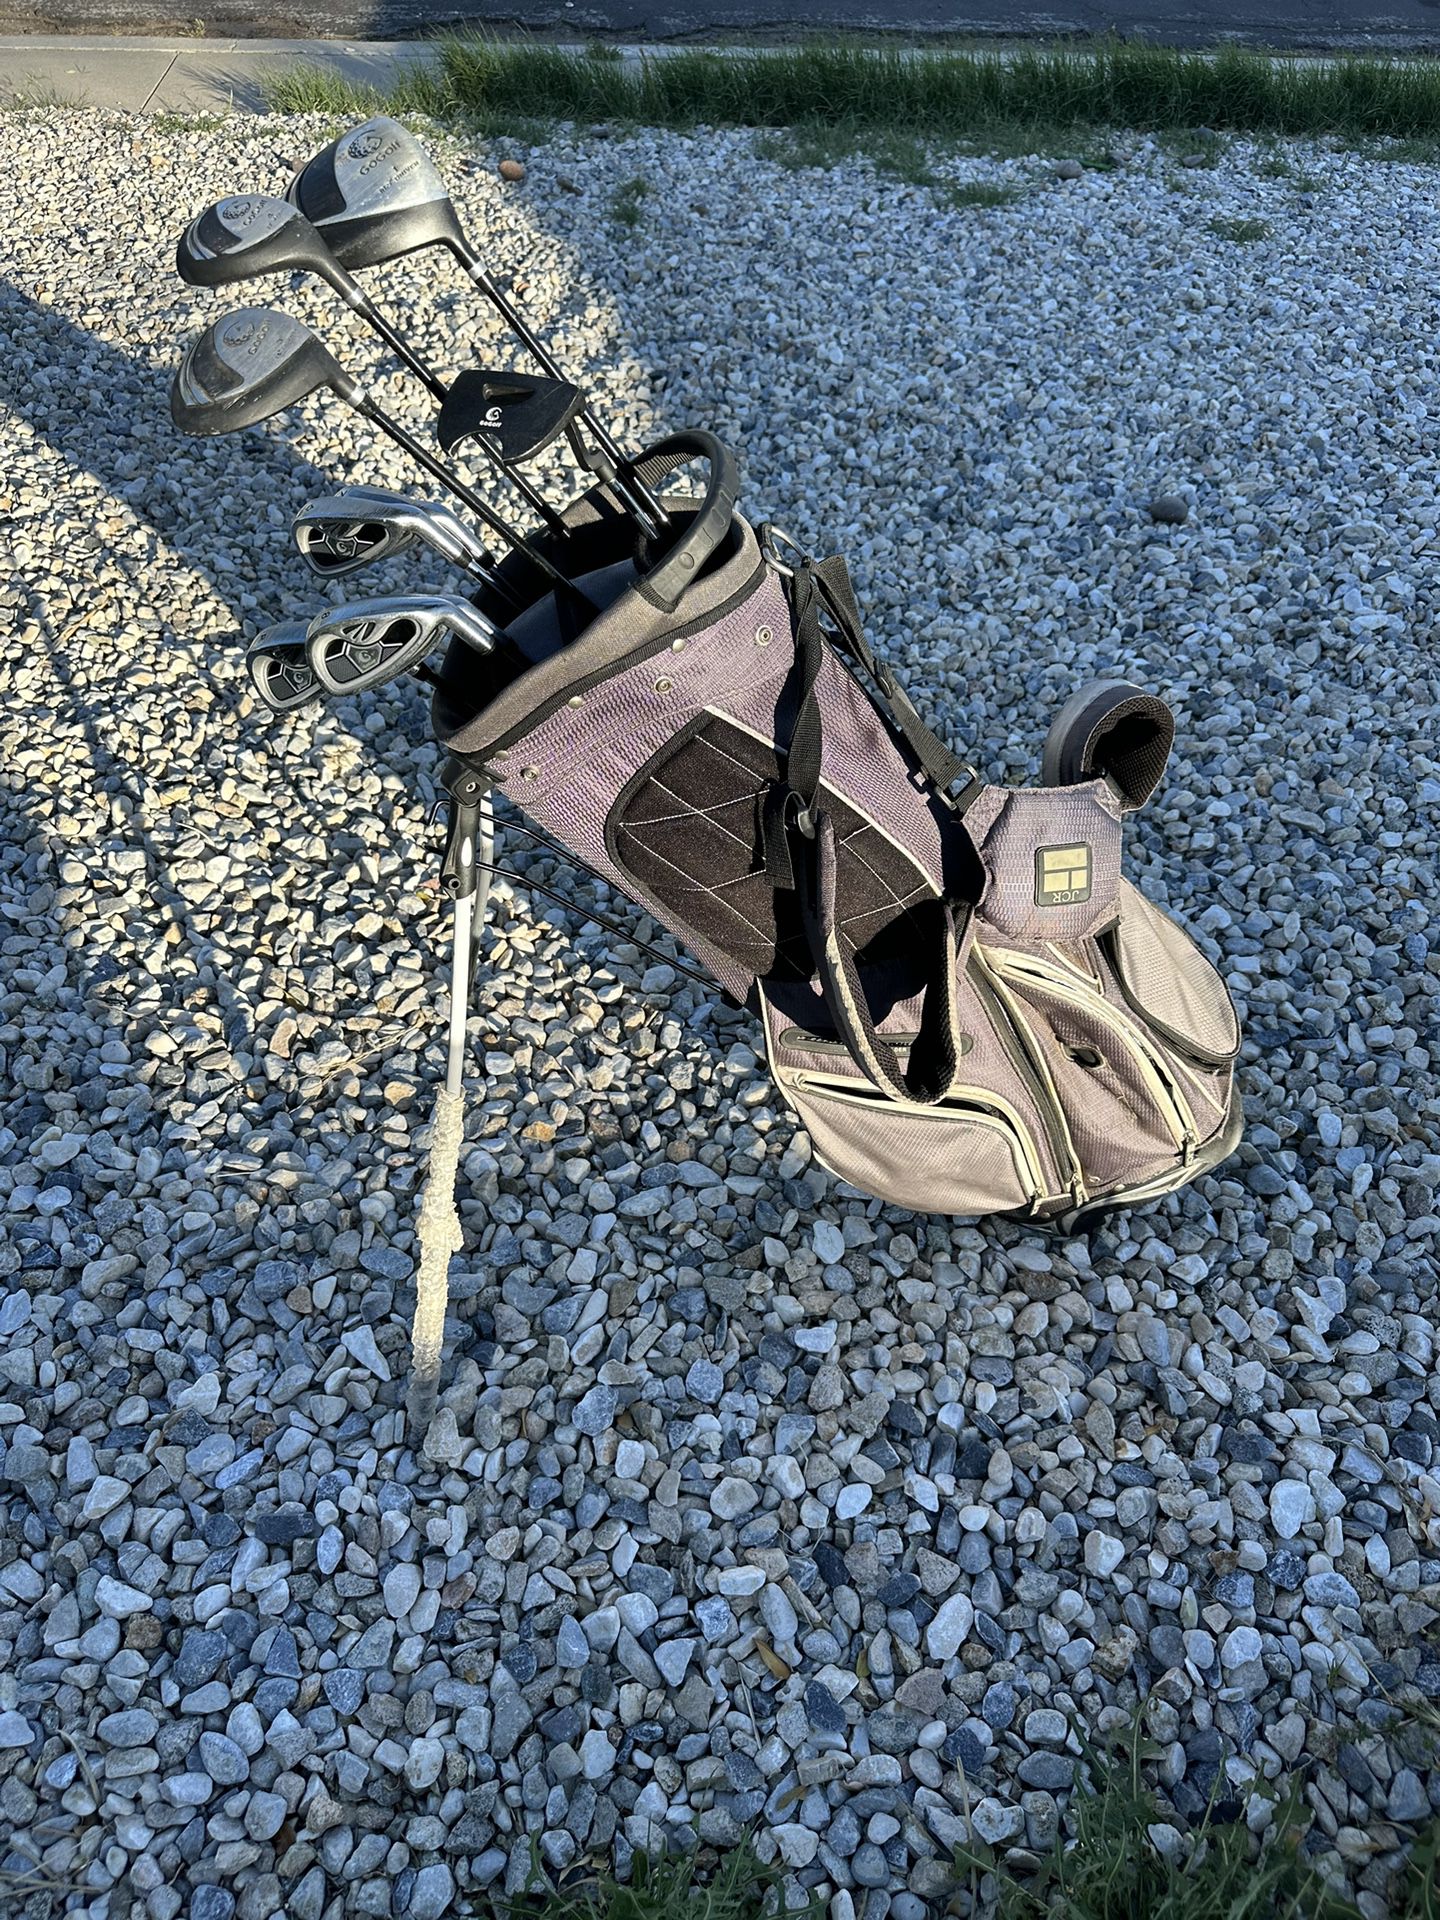 Full GoGolf Club Set With Bag! Golf Clubs!